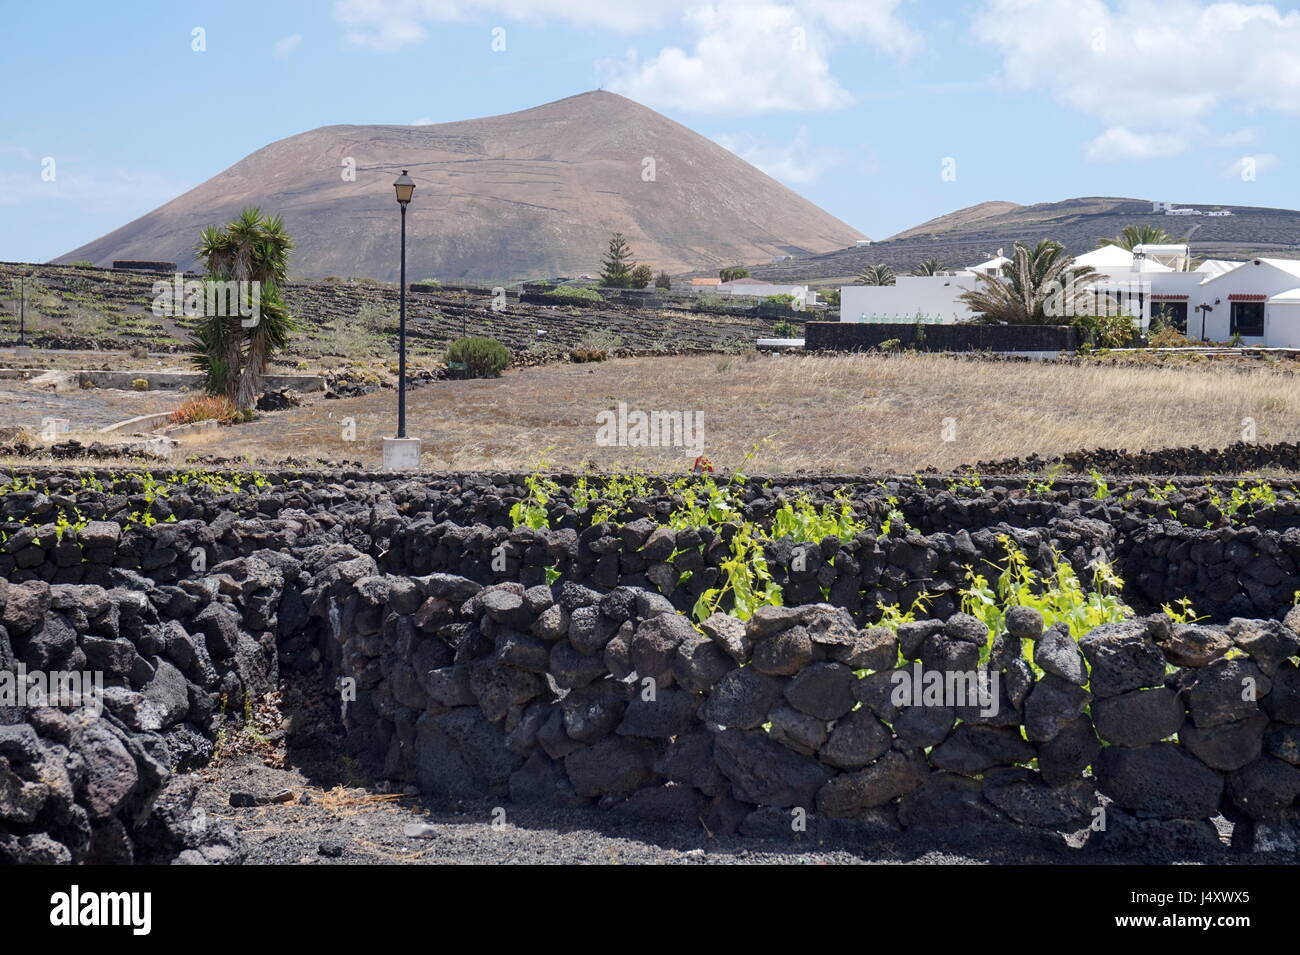 Ein Weinberg, Lanzarote, Kanarische Inseln, Spanien. Die Reben werden in kleinen Gruben mit Wänden aus vulkanischem Gestein sammeln Tau in der ariden Umgebung angebaut. Stockfoto